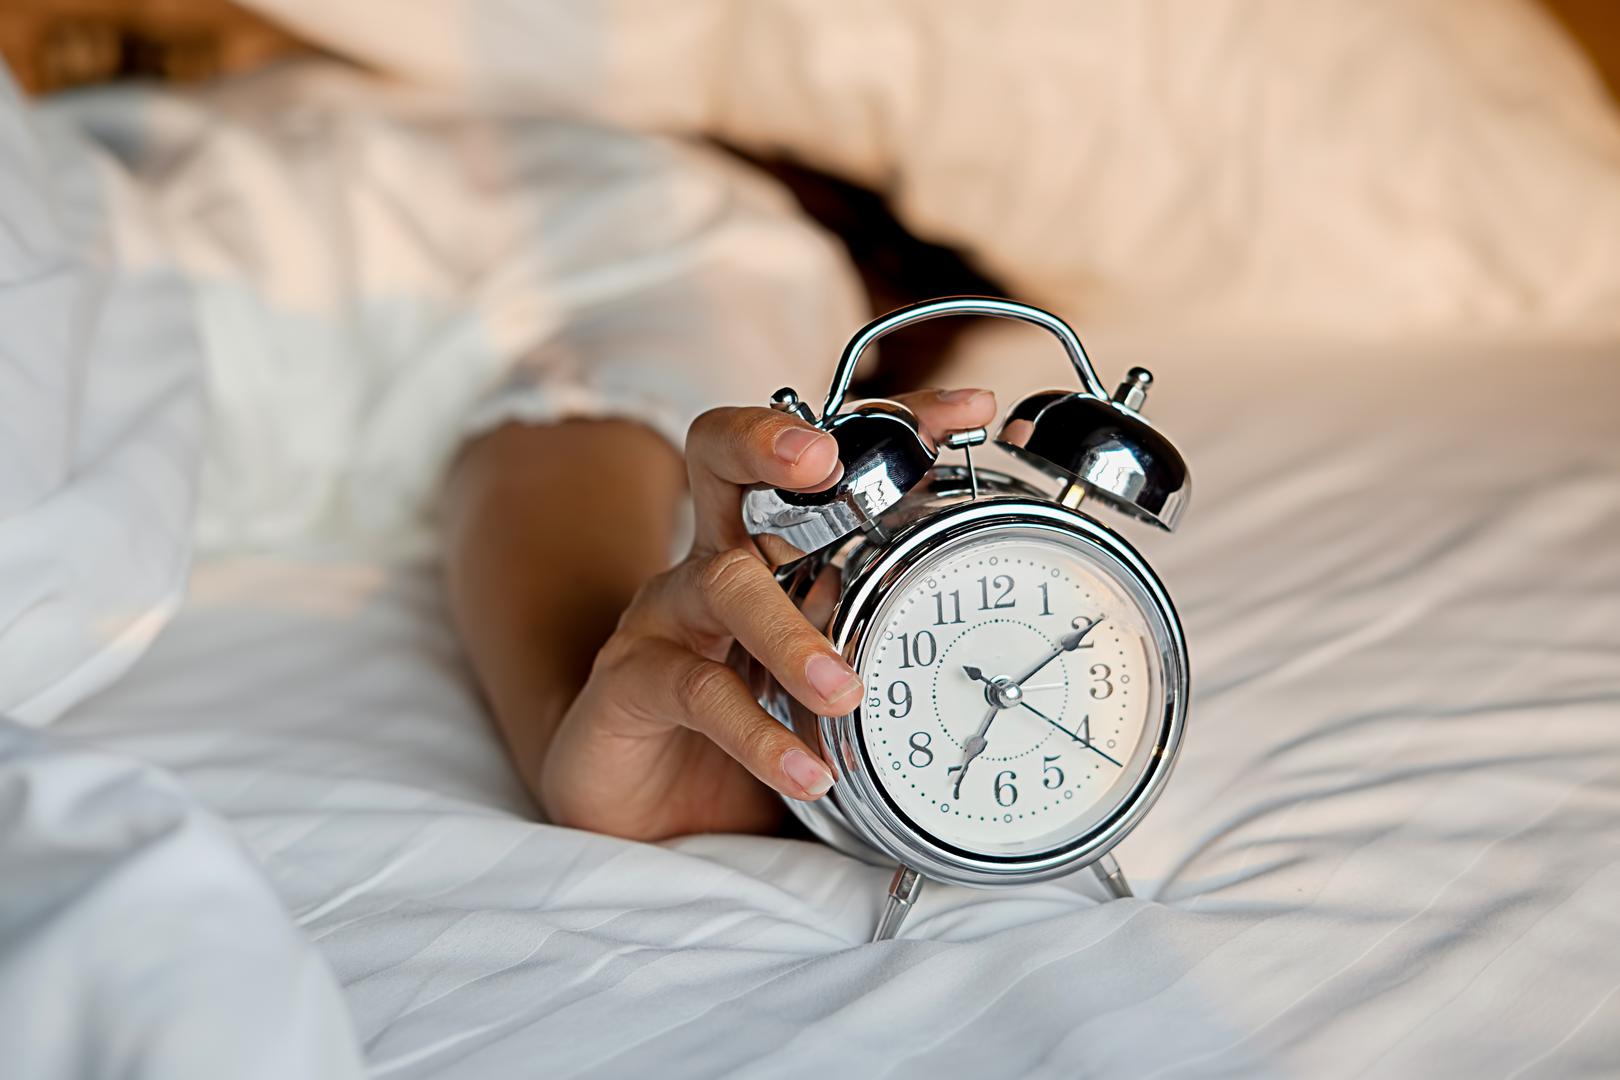 1. Odrasloj osobi je dovoljno pet sati sna

Prema statistici Svjetskog dana spavanja, deprivacija sna ugrožava zdravlje 45% svjetske populacije. Spavanje pet sati dnevno ili manje, dosljedno povećava rizik od kardiovaskularnih bolesti i rane smrtnosti. Najzdravije je spavati između sedam i devet sati.